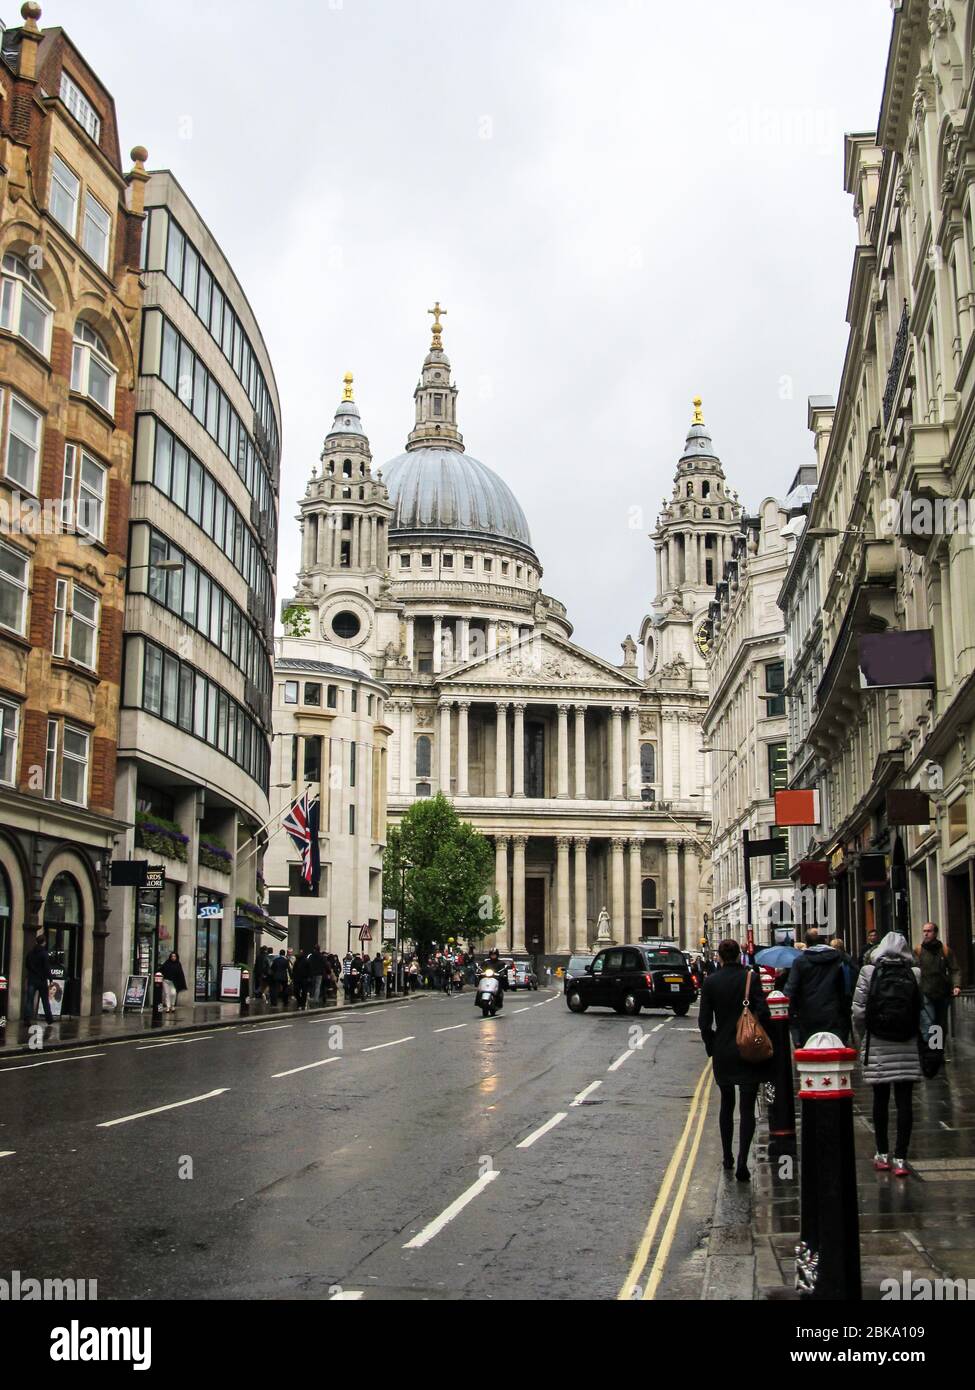 Cathédrale St Paul, Londres, vue de Ludgate Hill, avec des immeubles d'appartements et de bureaux de différentes époques architecturales s'élevant de chaque côté Banque D'Images